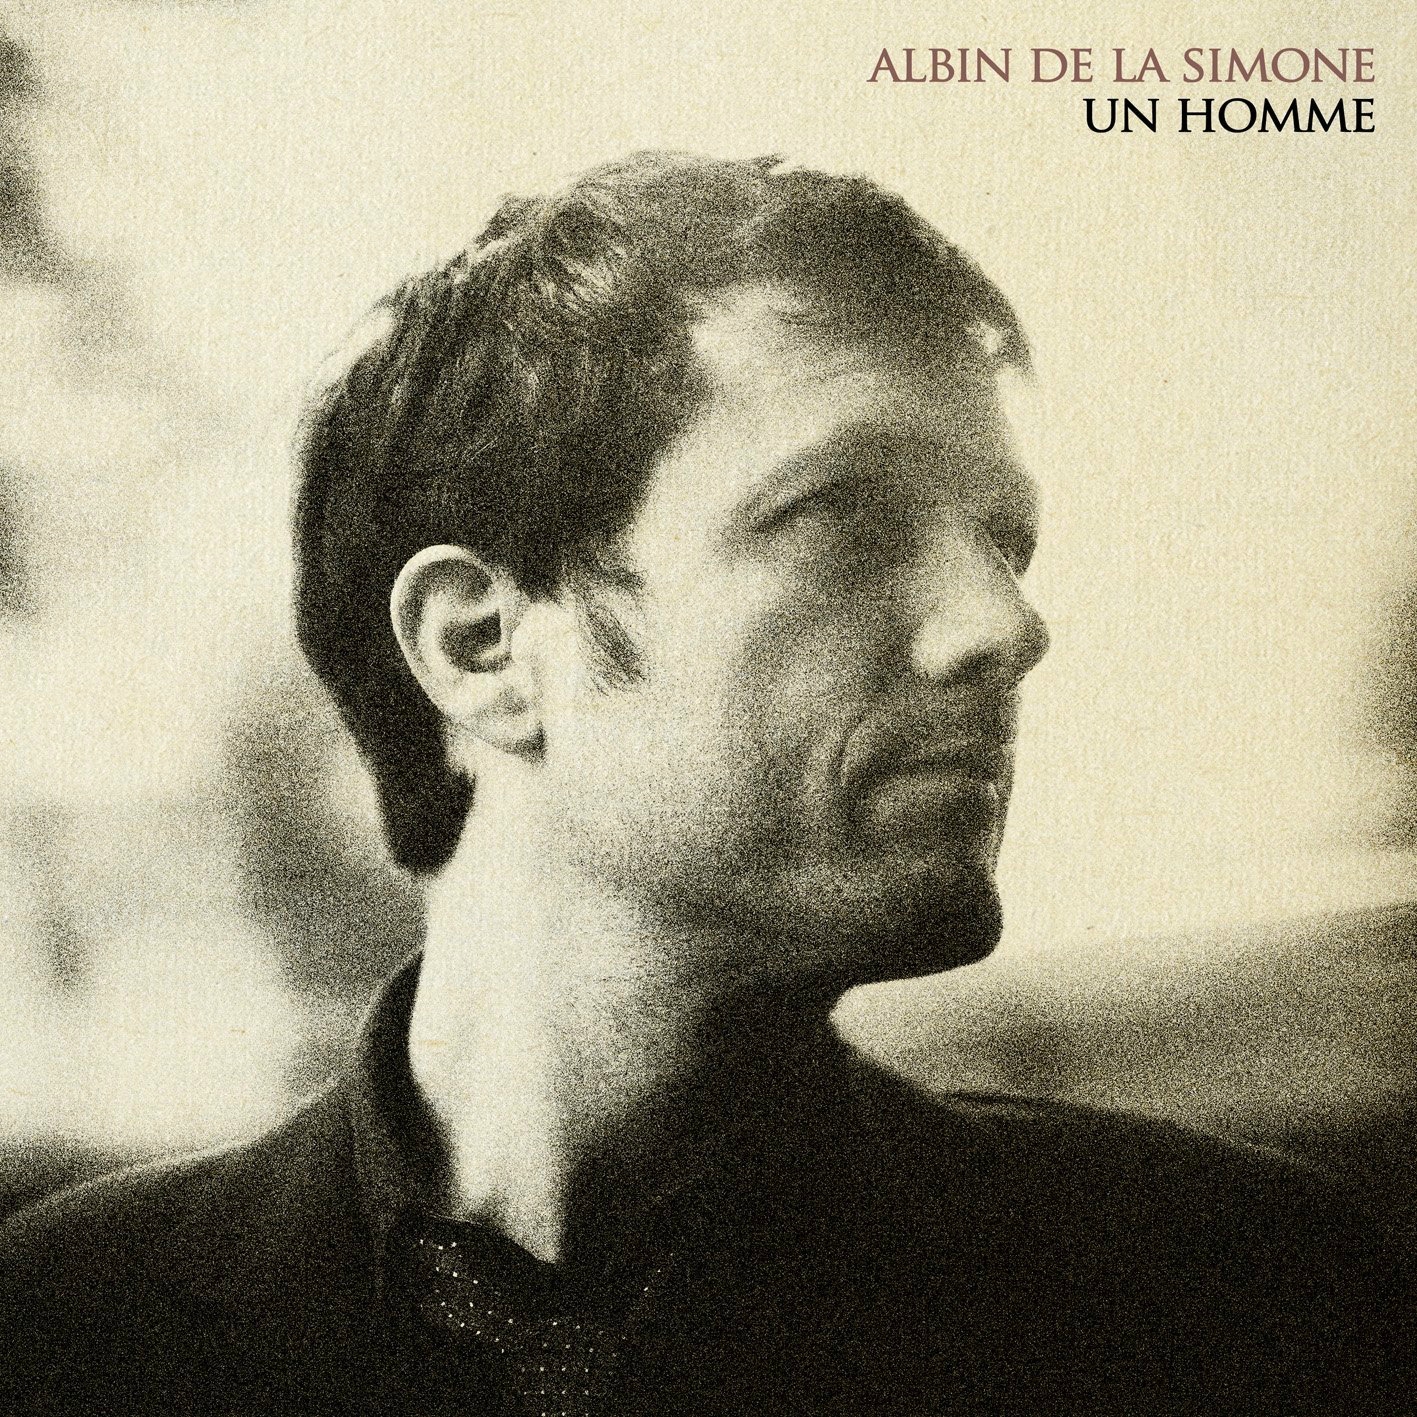 Albin-de-la-simone-un-homme_cover